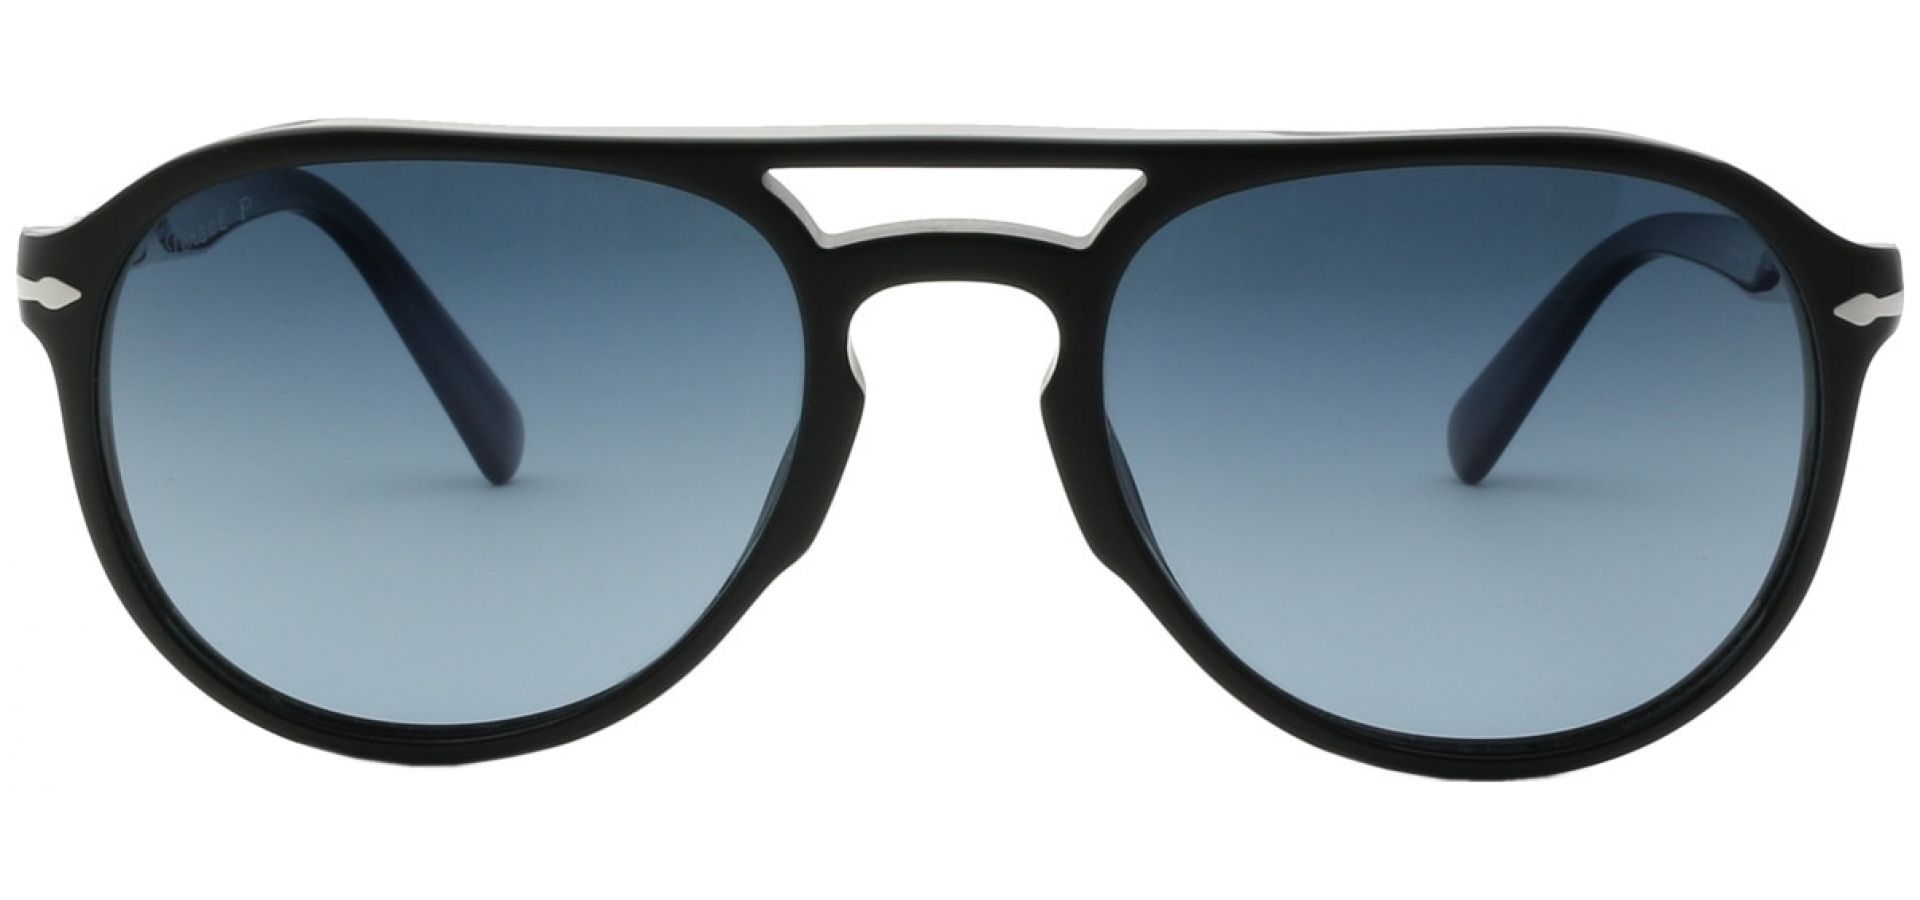 Sunčane naočale Persol PERSOL 3235: Boja: Black Blue, Veličina: 53, Spol: muške, Materijal: acetat